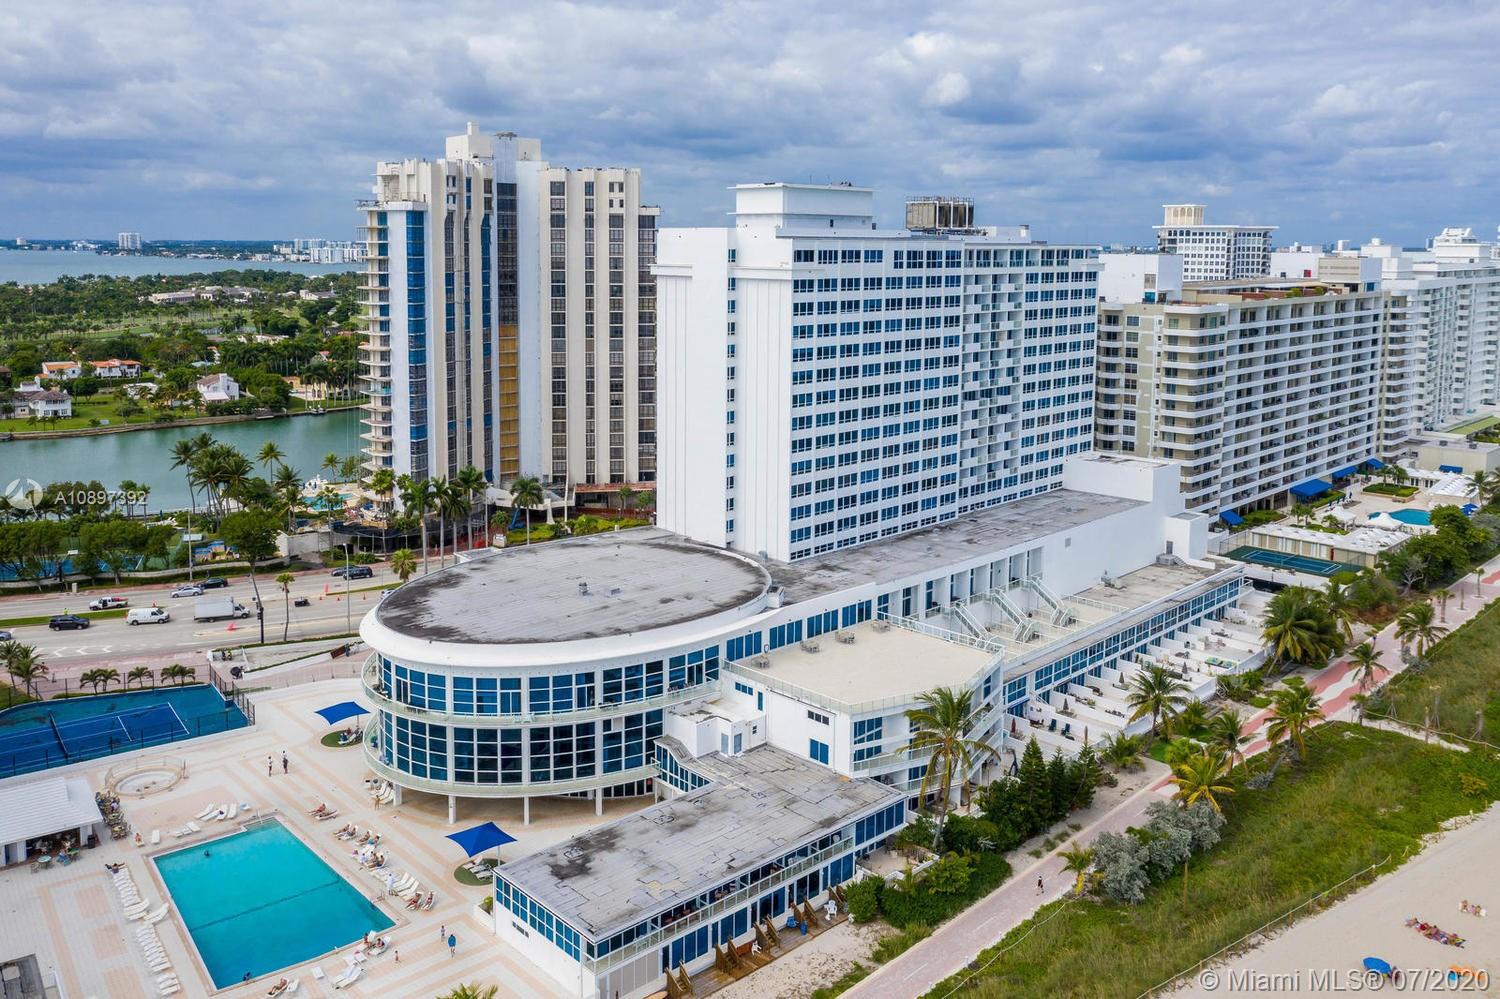 Castle Beach Club Unit #1103 Condo for Rent in Mid-Beach - Miami Beach